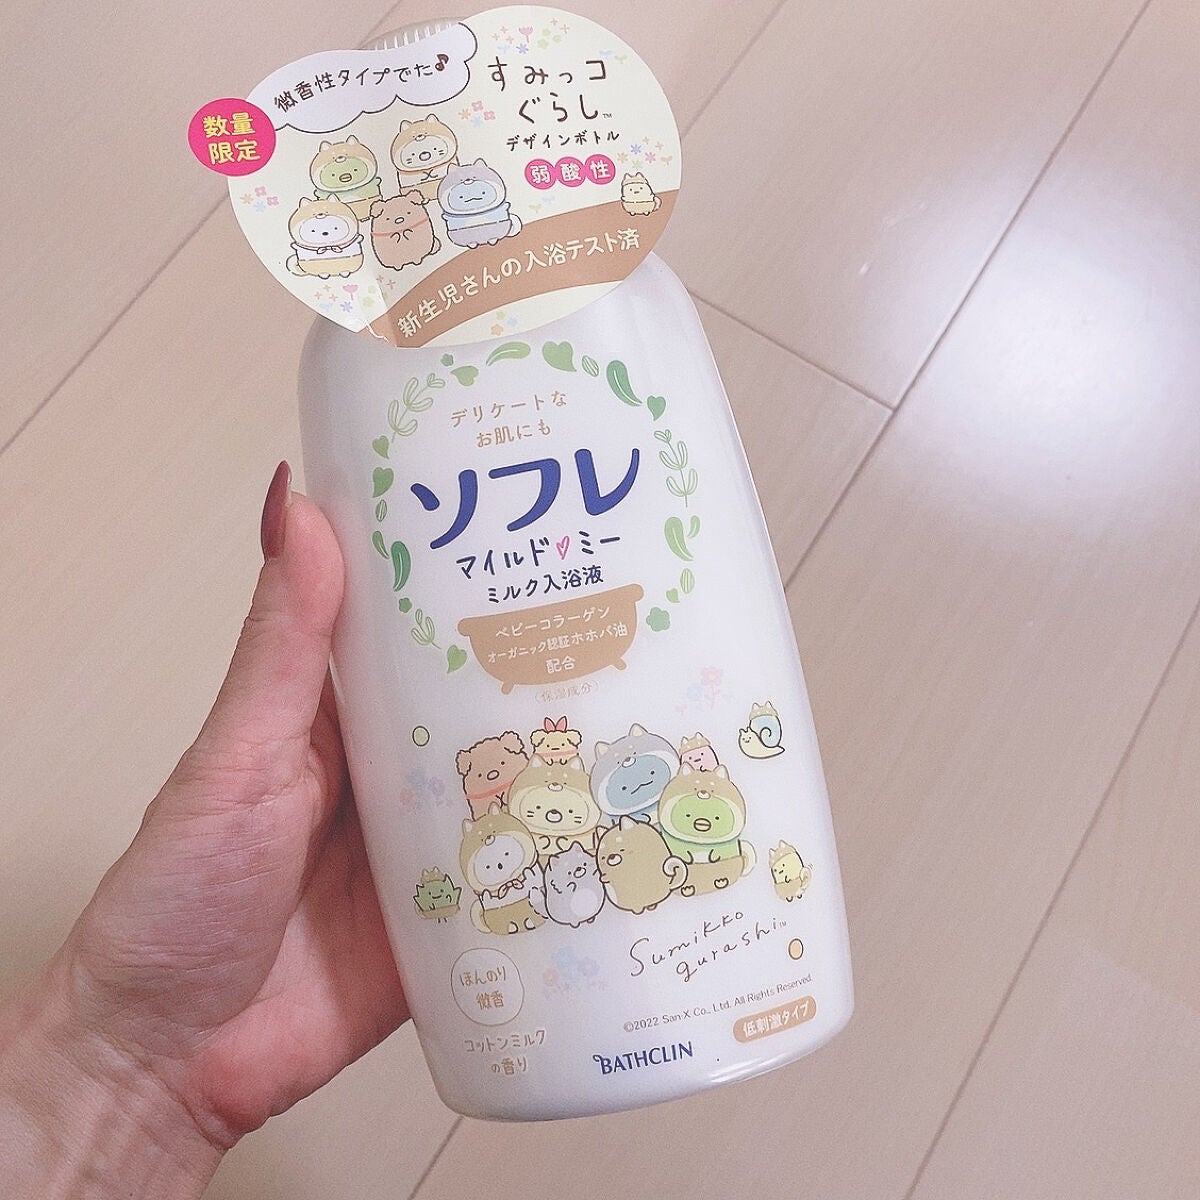 ソフレ マイルド・ミー ミルク入浴液 コットンミルク 詰替 600mL